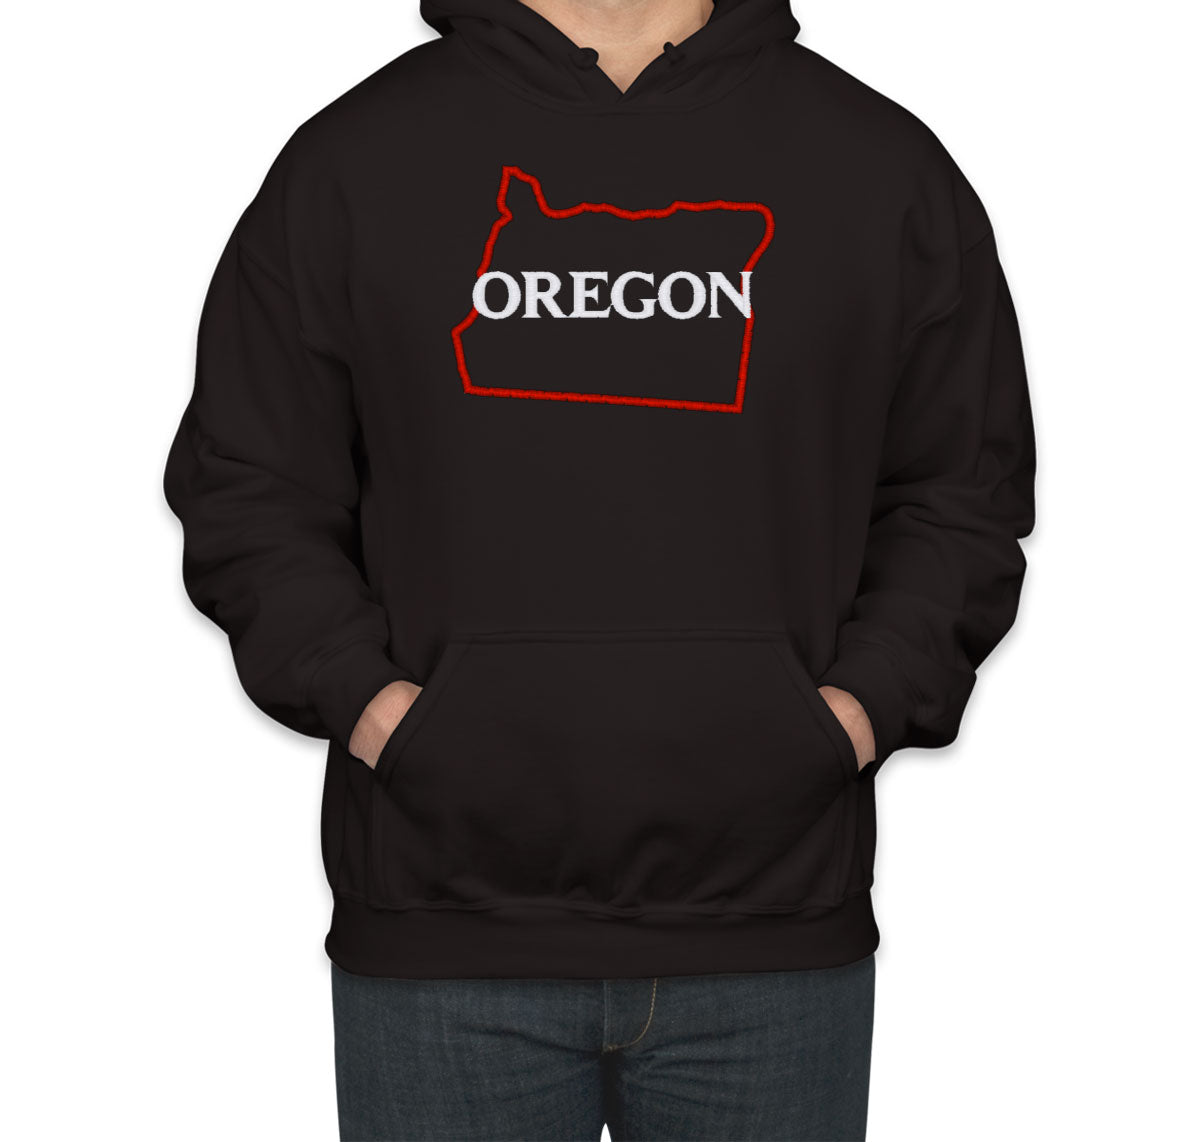 Oregon Embroidered Unisex Hoodie